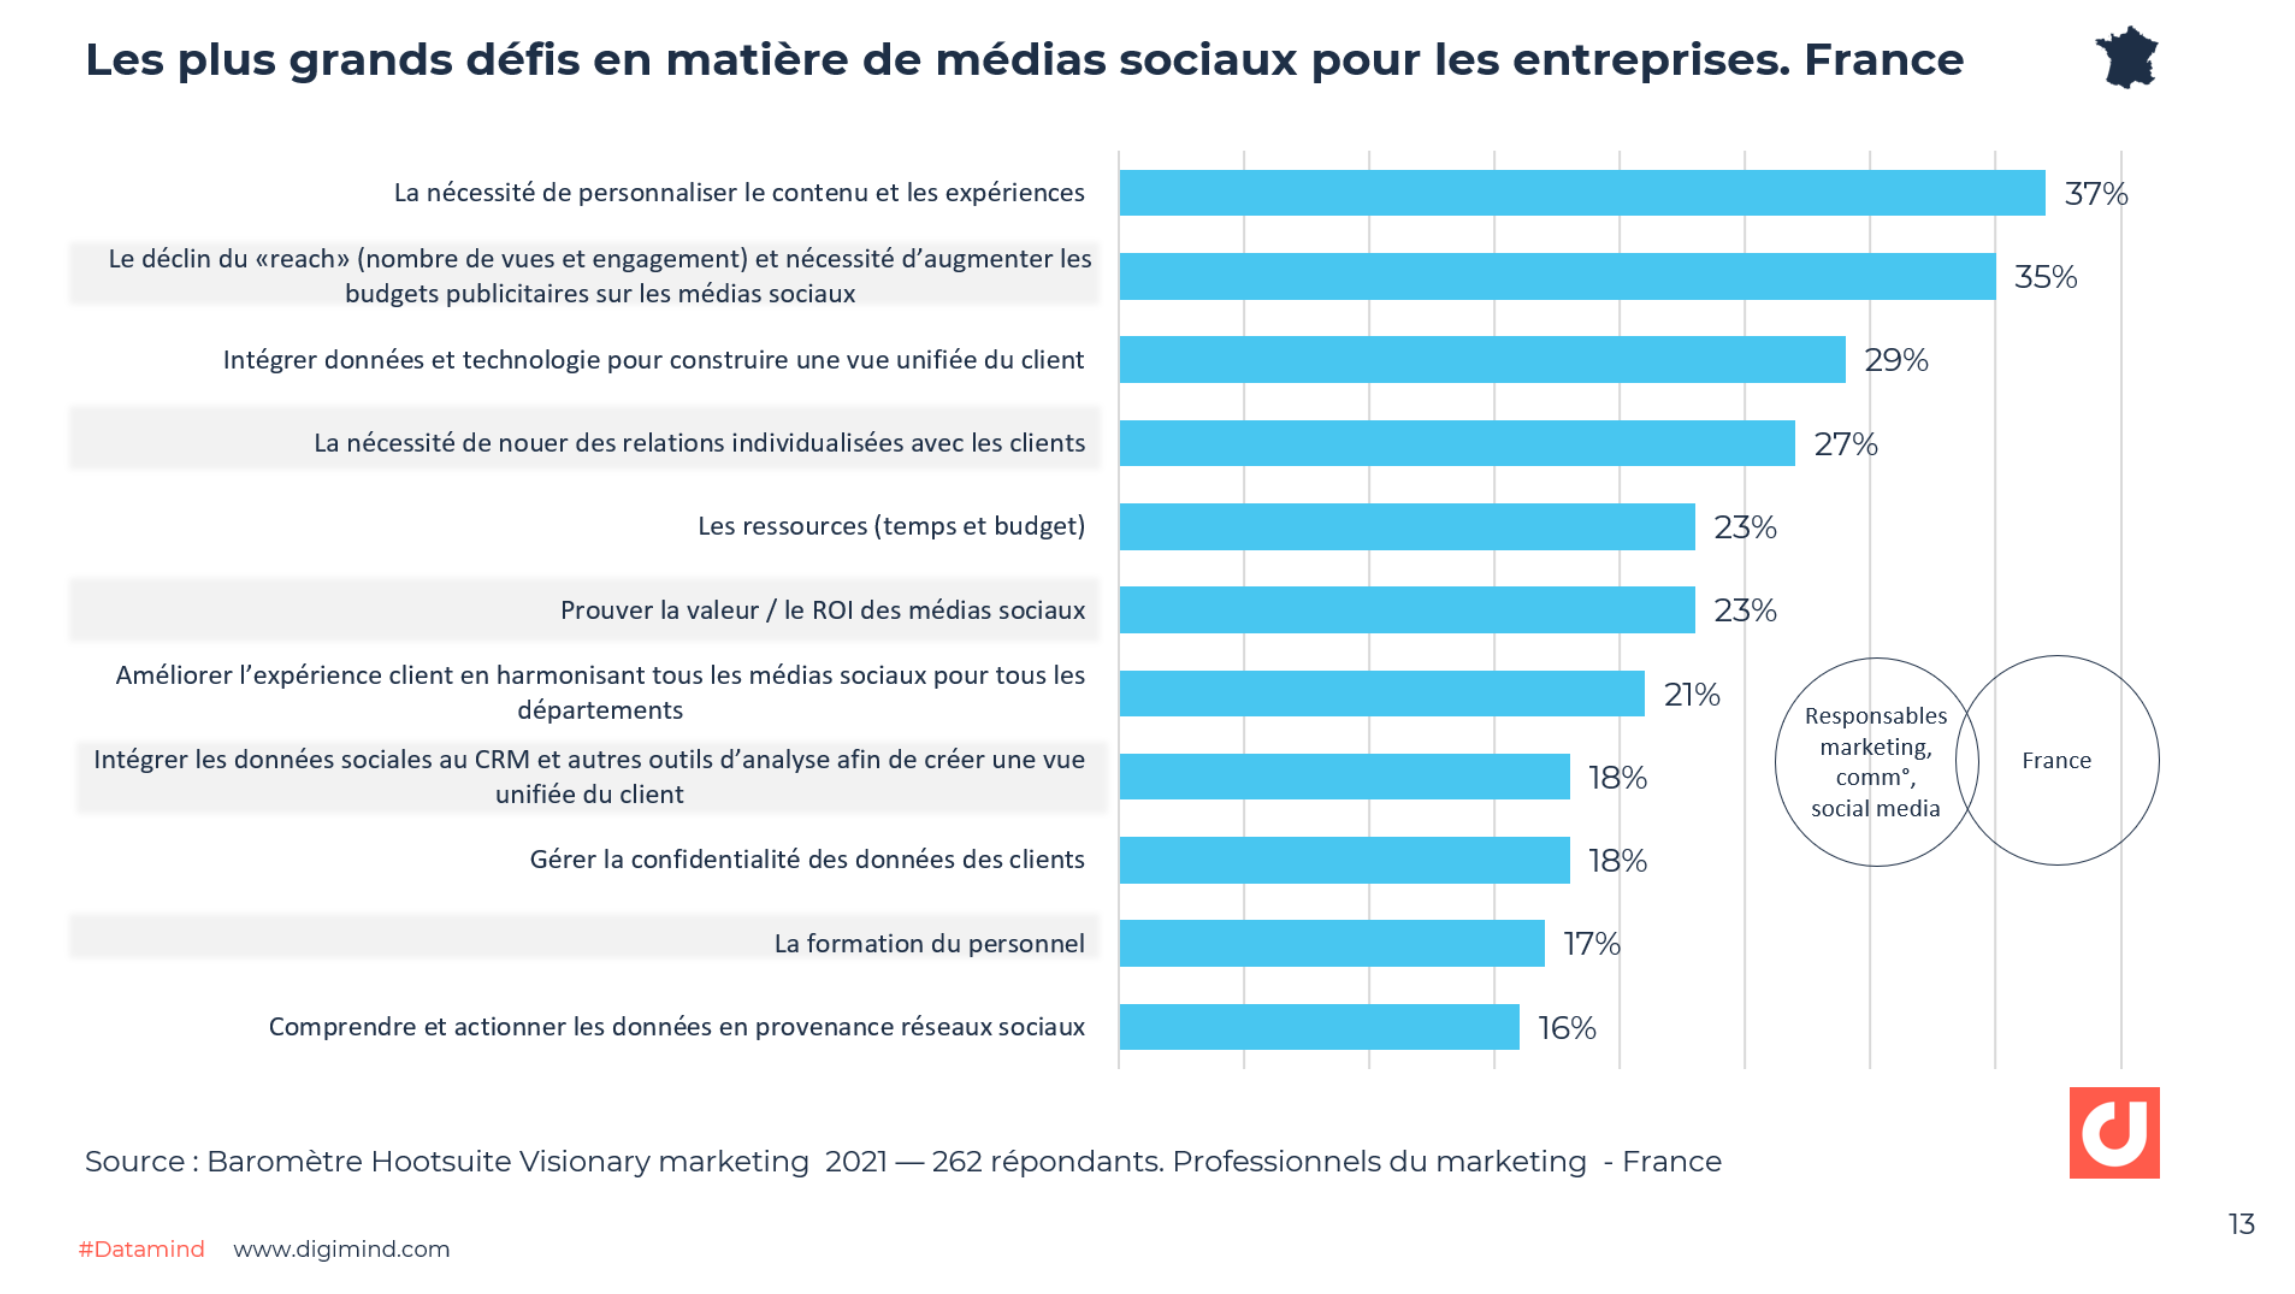 Les plus grands défis en matière de médias sociaux pour les entreprises. France